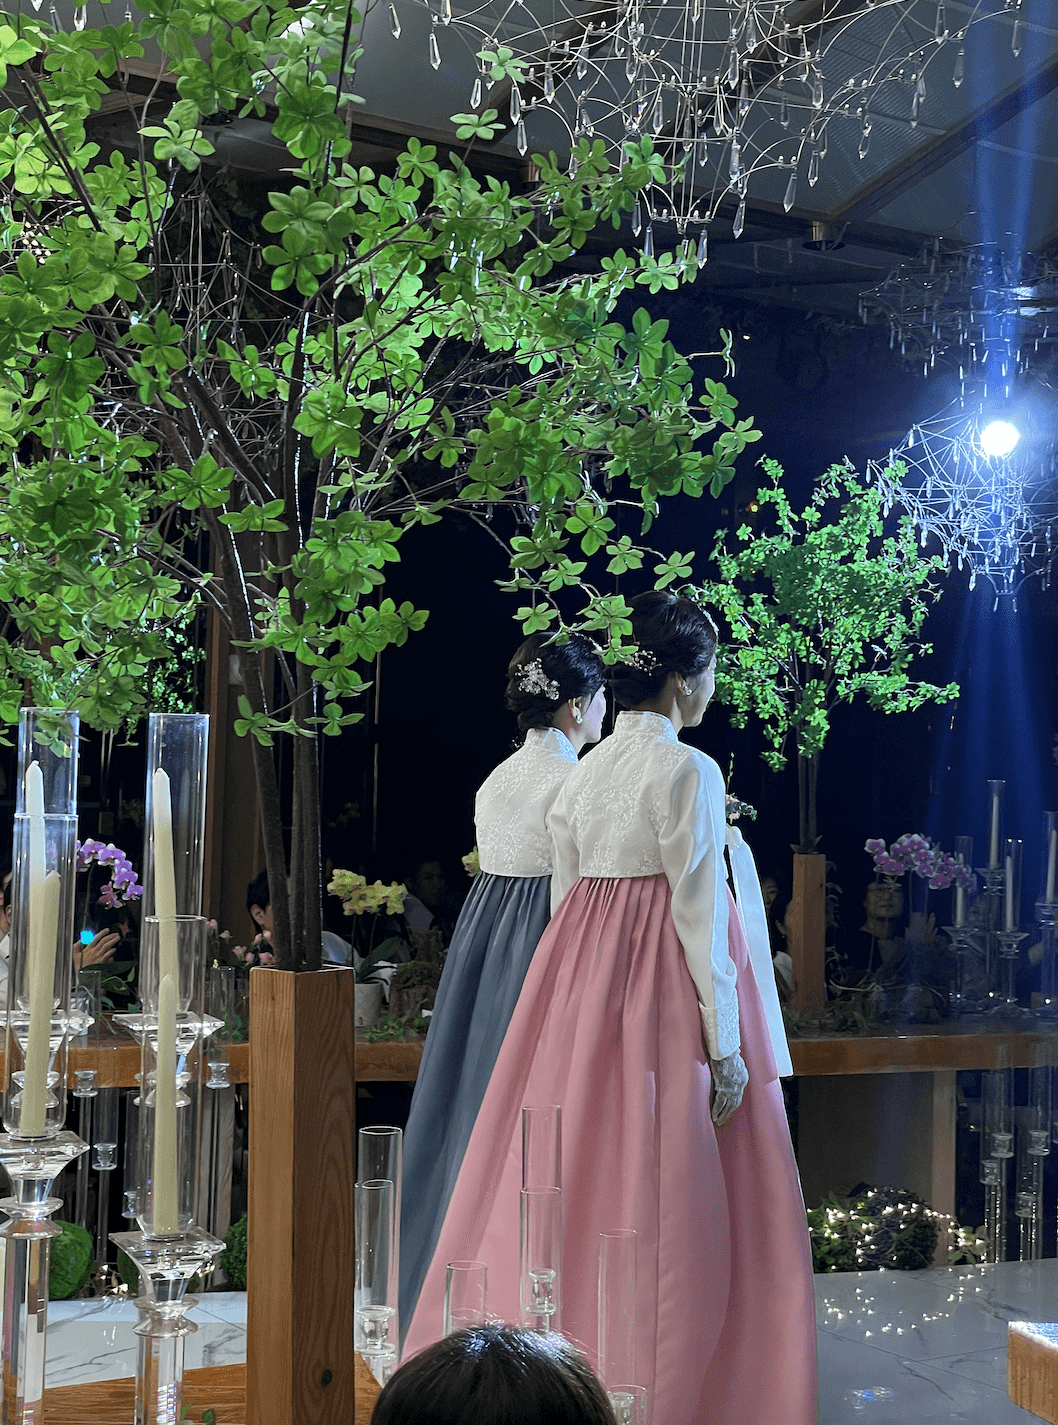 韓國婚禮 Korean Wedding
穿搭禁忌、流程介紹、禮金文化大公開